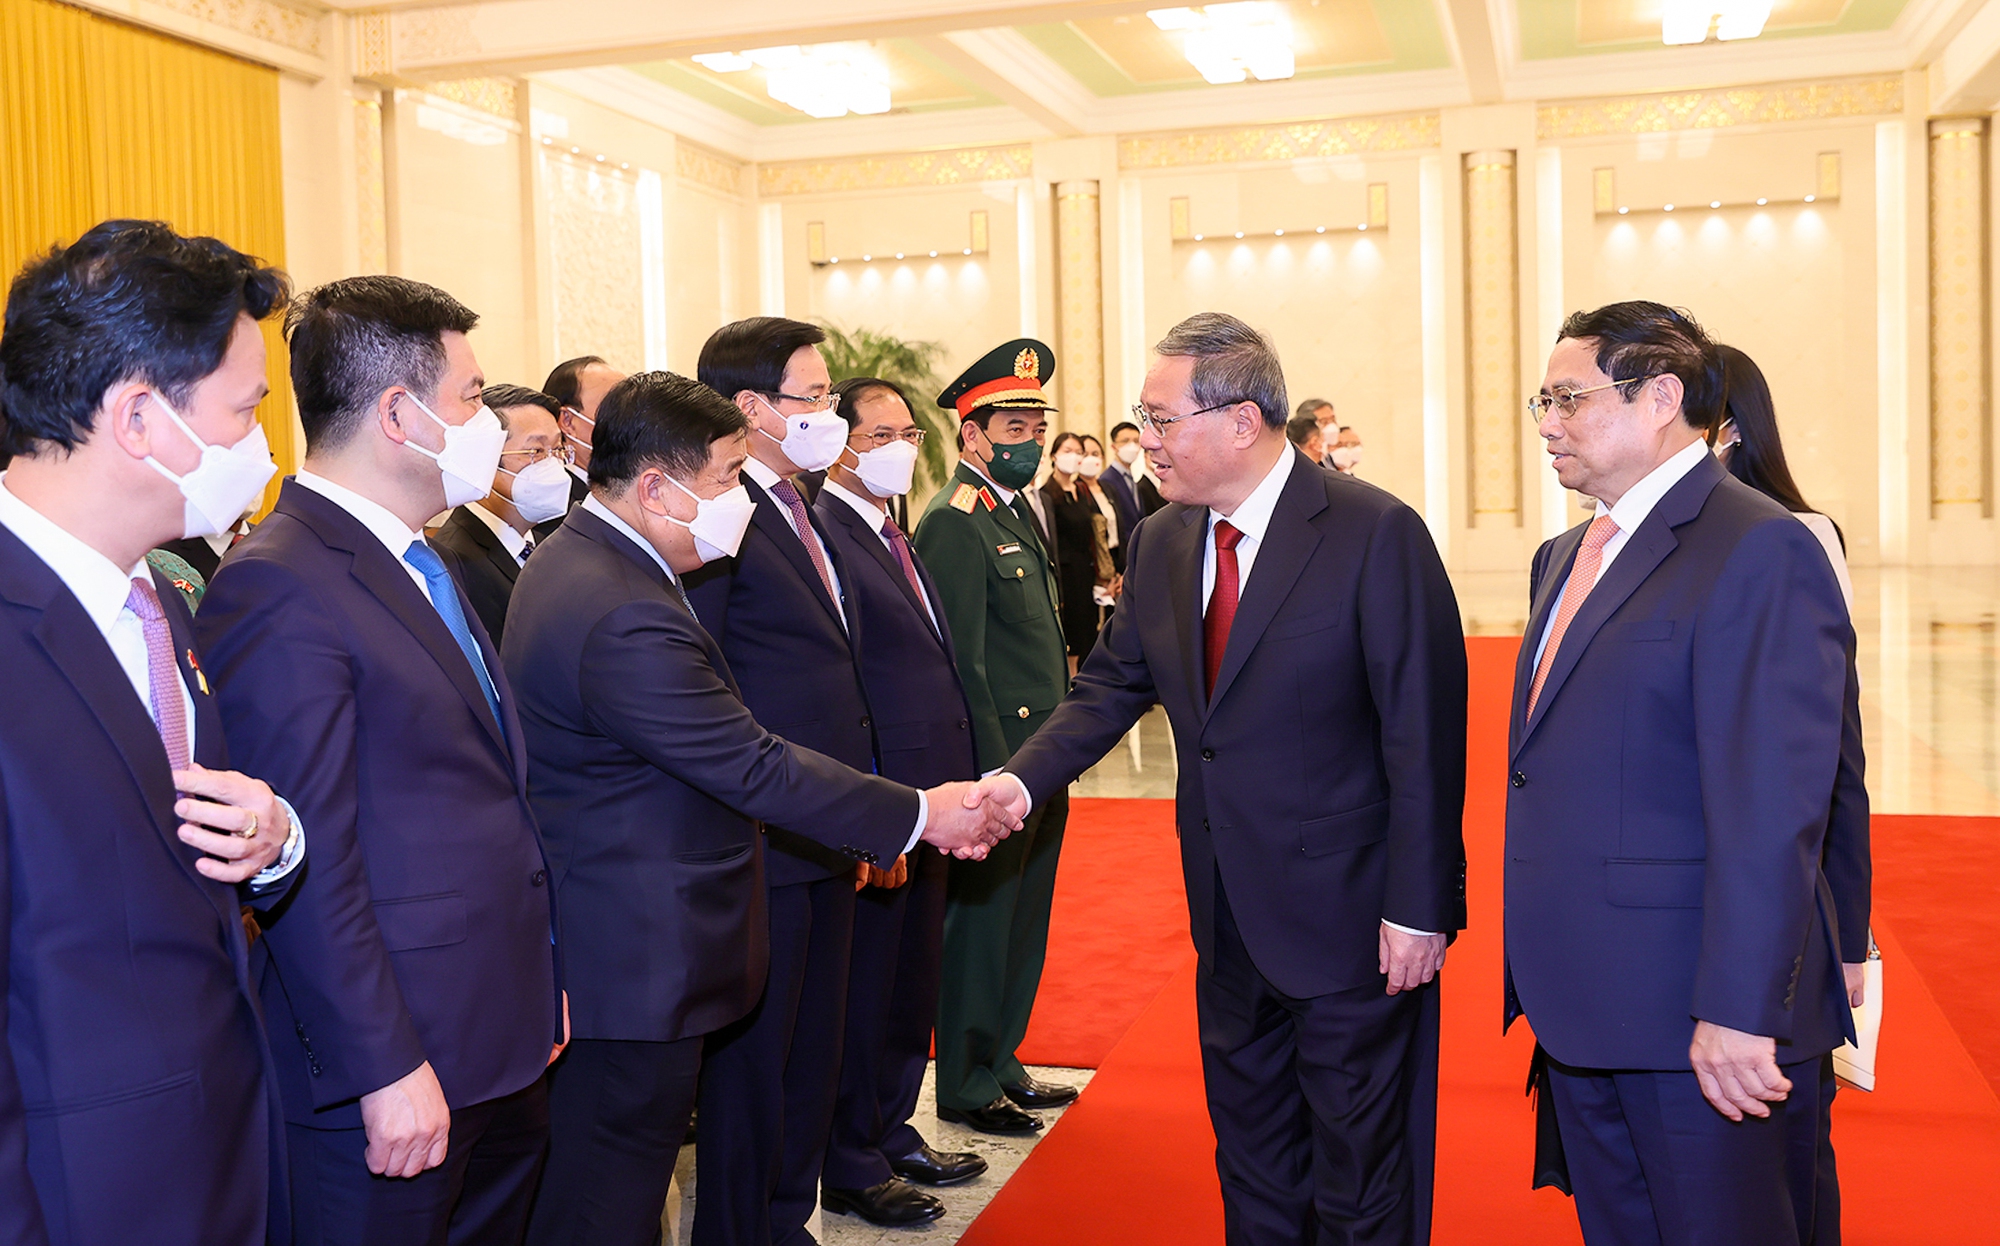 Chùm ảnh: Lễ đón chính thức Thủ tướng Chính phủ Phạm Minh Chính thăm Trung Quốc - Ảnh 6.